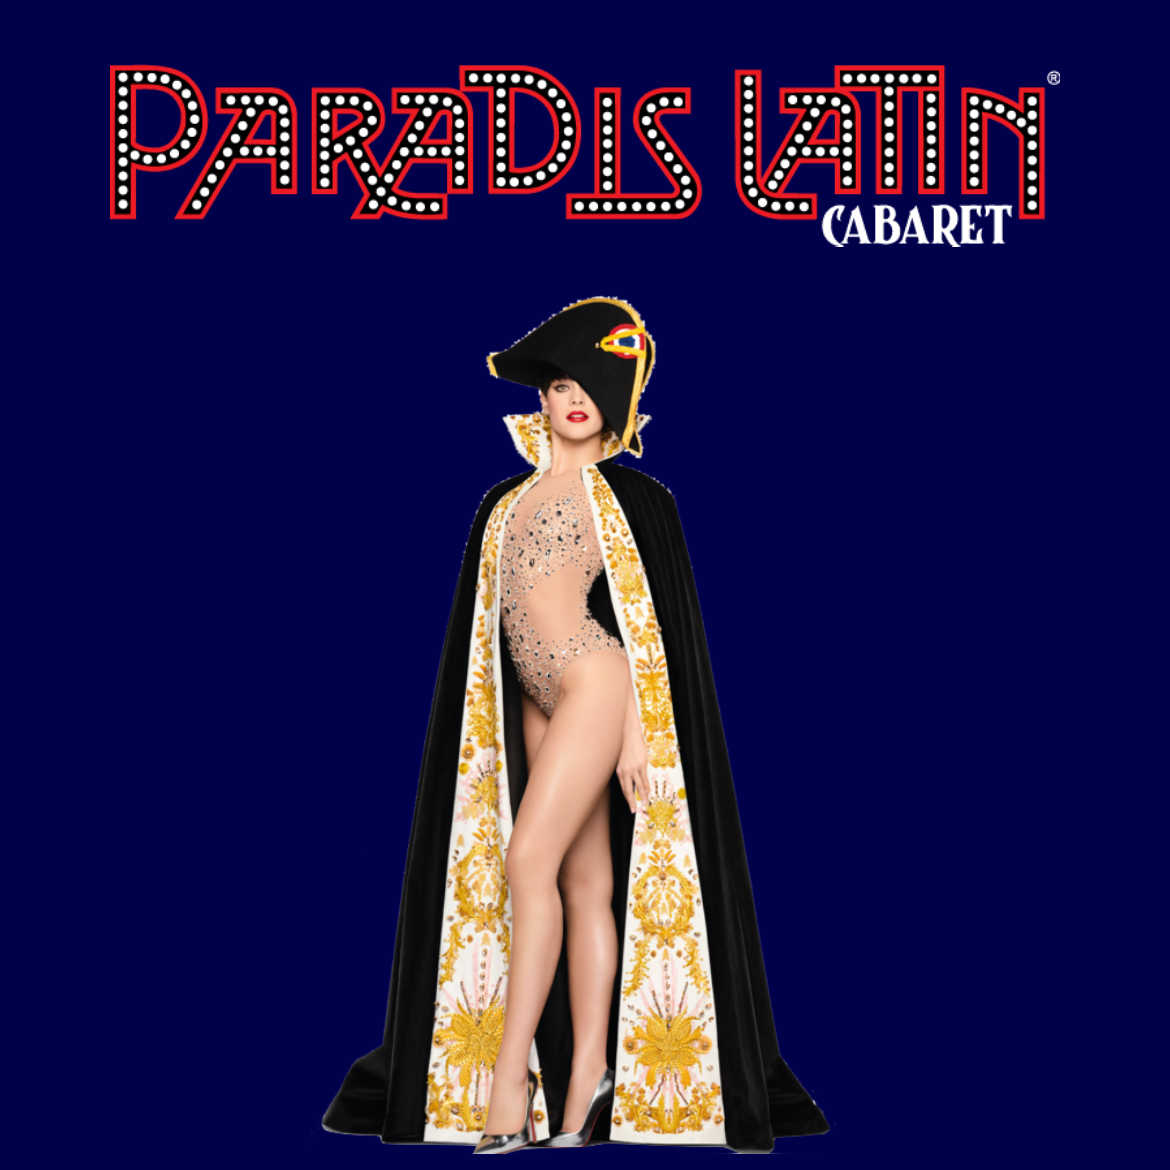 Cabaret paradis Latin Paris